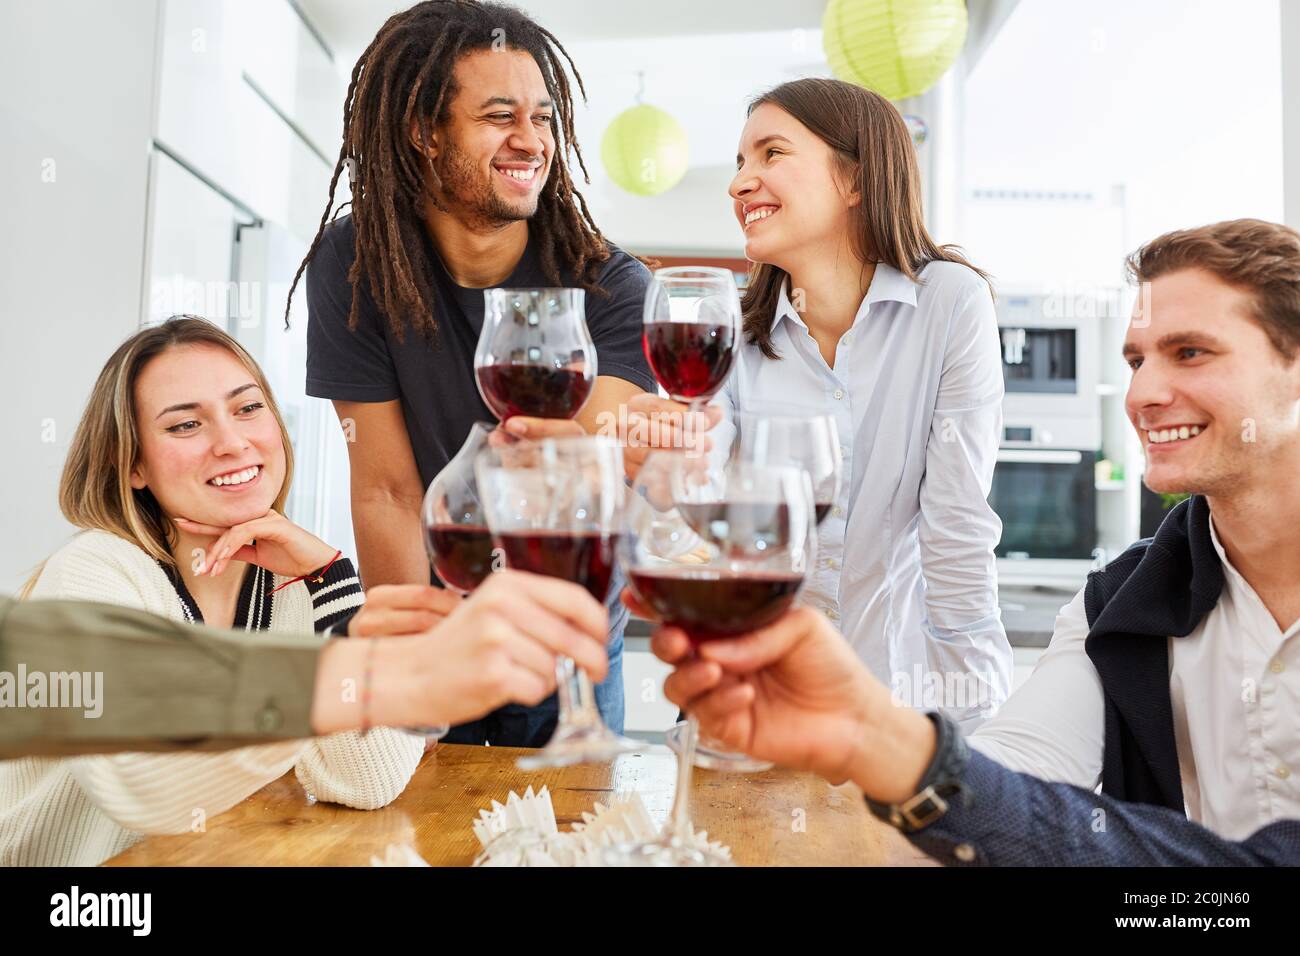 Un bon groupe d'amis pour fêter un toast dans la cuisine avec un verre de vin rouge Banque D'Images